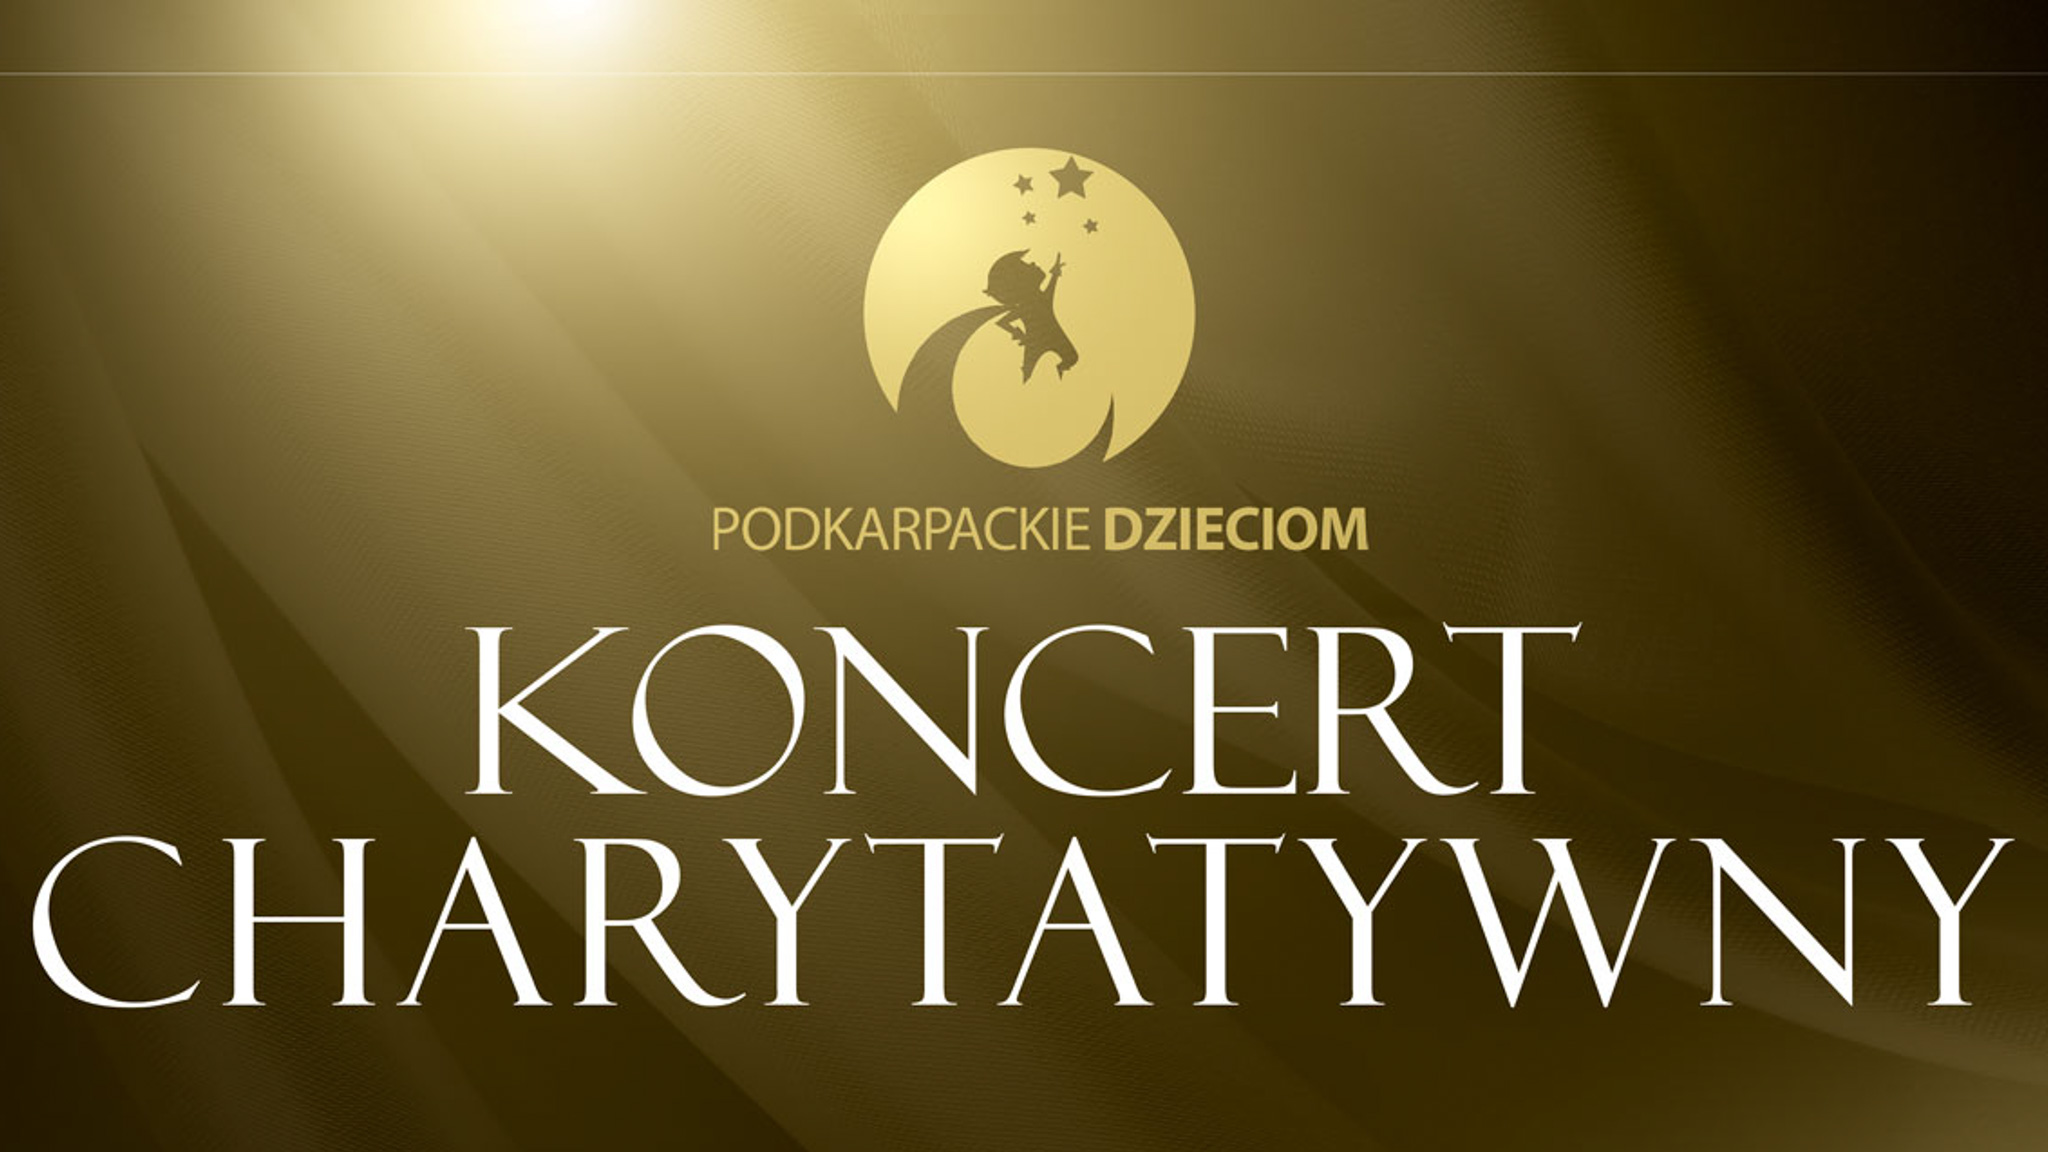 Napis "Koncert Charytatywny" na złotym tel.